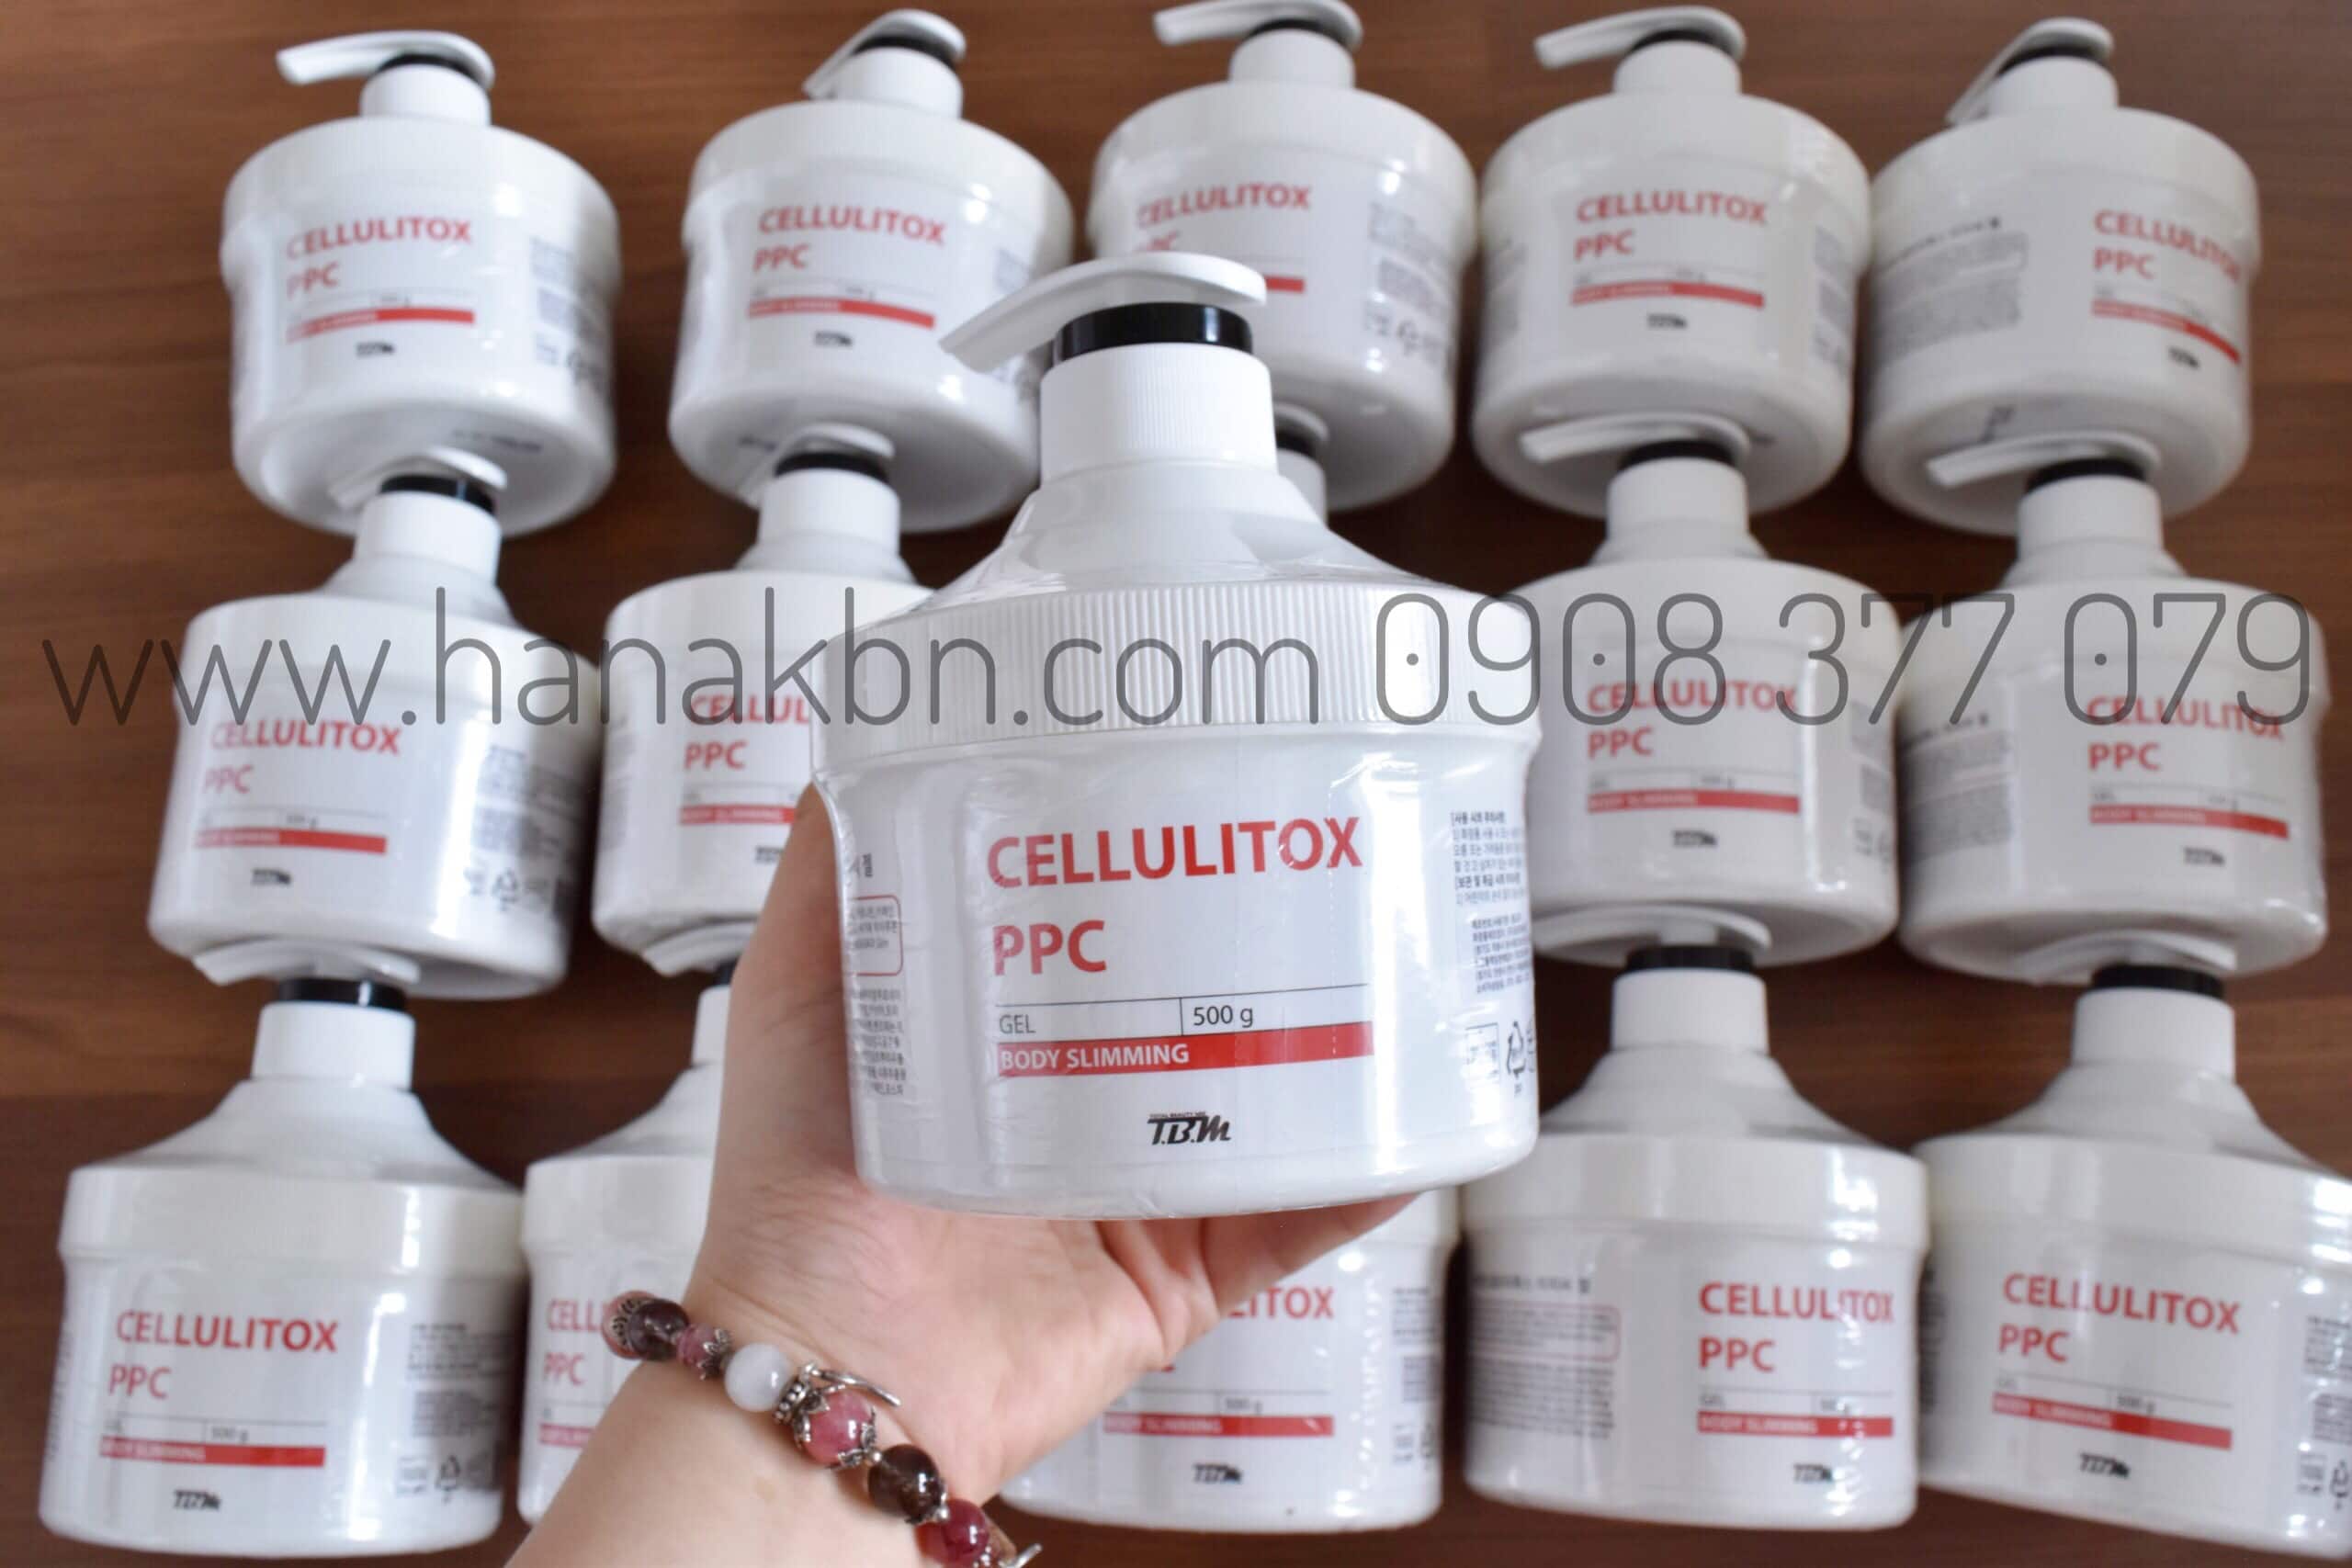 Hình ảnh về hàng Kem Tan Mỡ TBM Cellulitox PPC Gel tại công ty HanaKBN